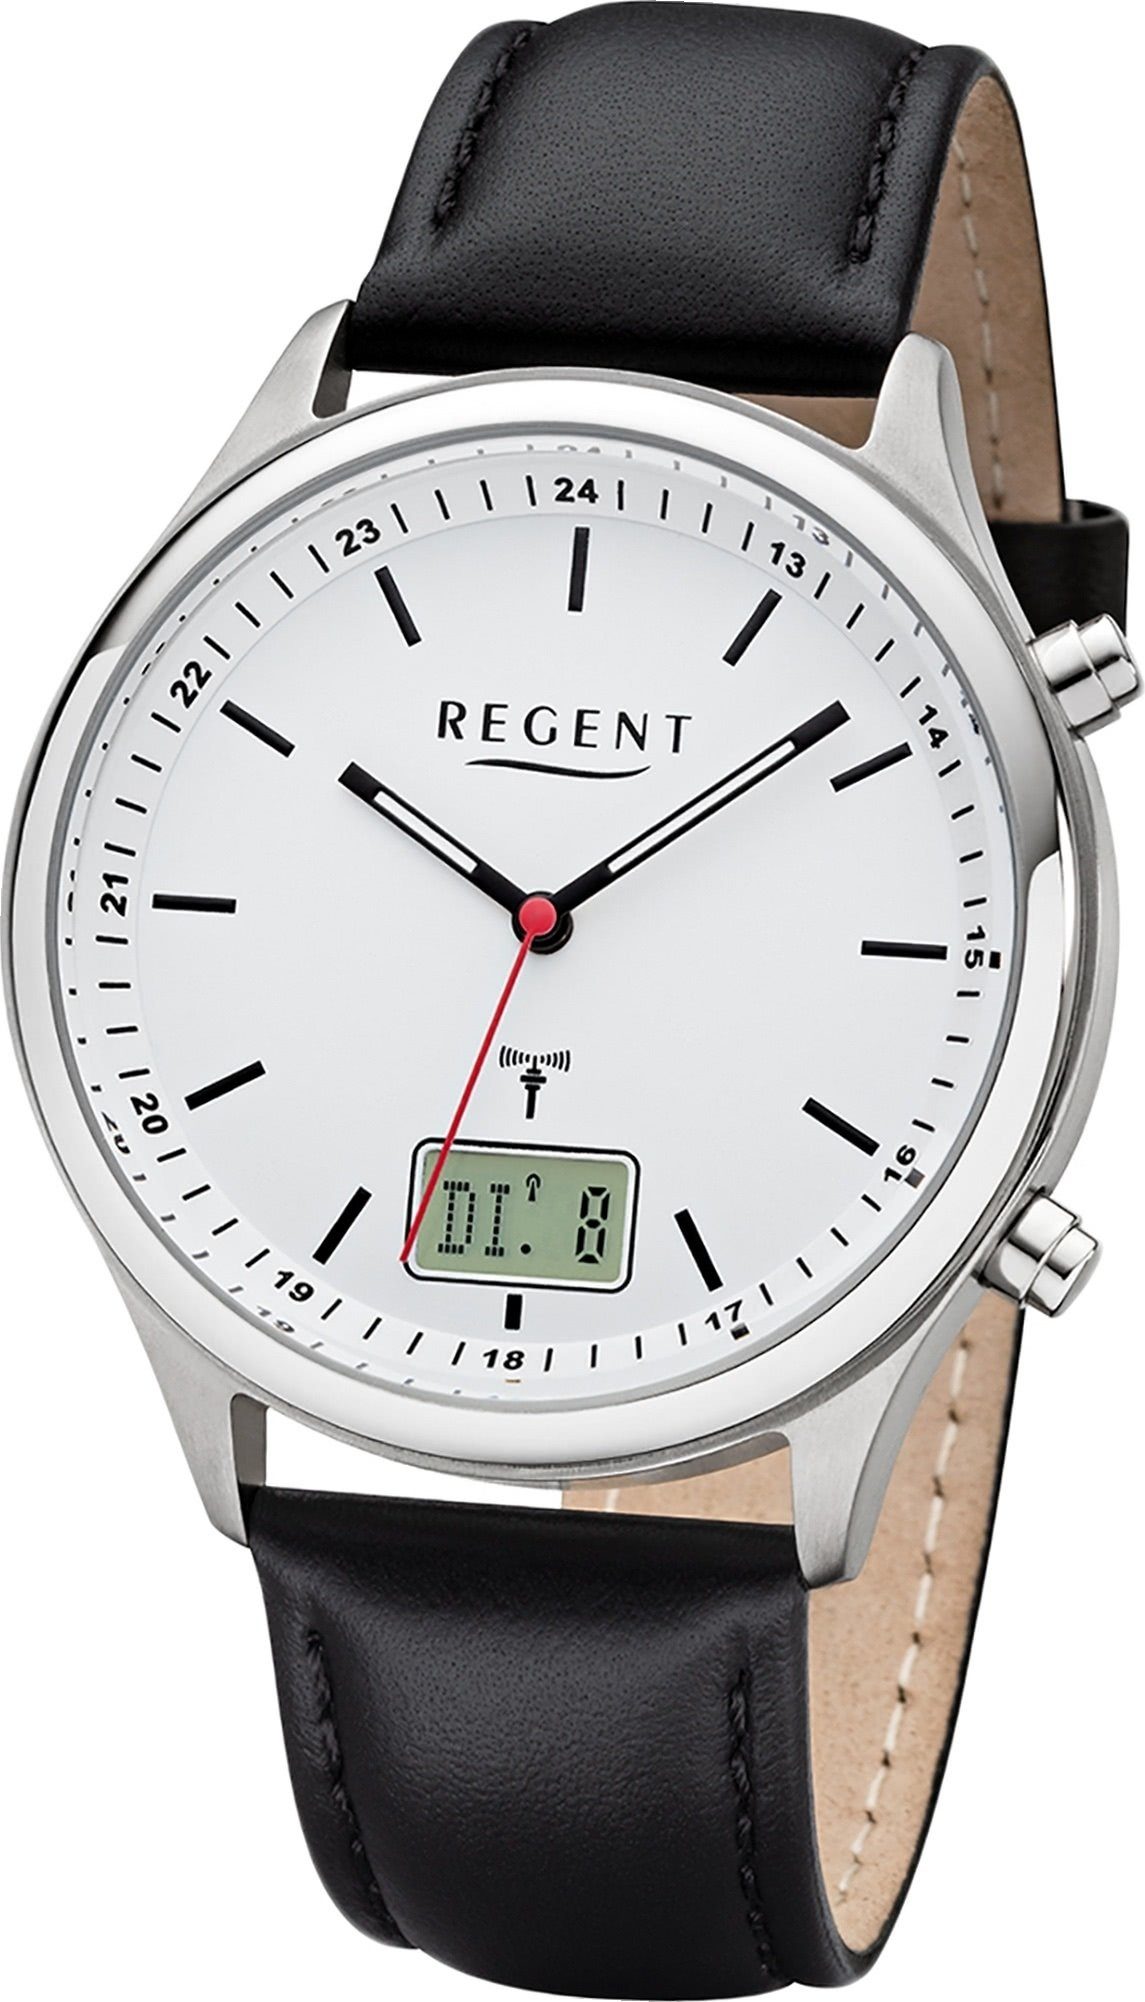 Uhr Lederarmband Regent BA-449, groß Herren Gehäuse, Herrenuhr (ca. 40mm) rundes Funkuhr Analog-Digital schwarz, Regent